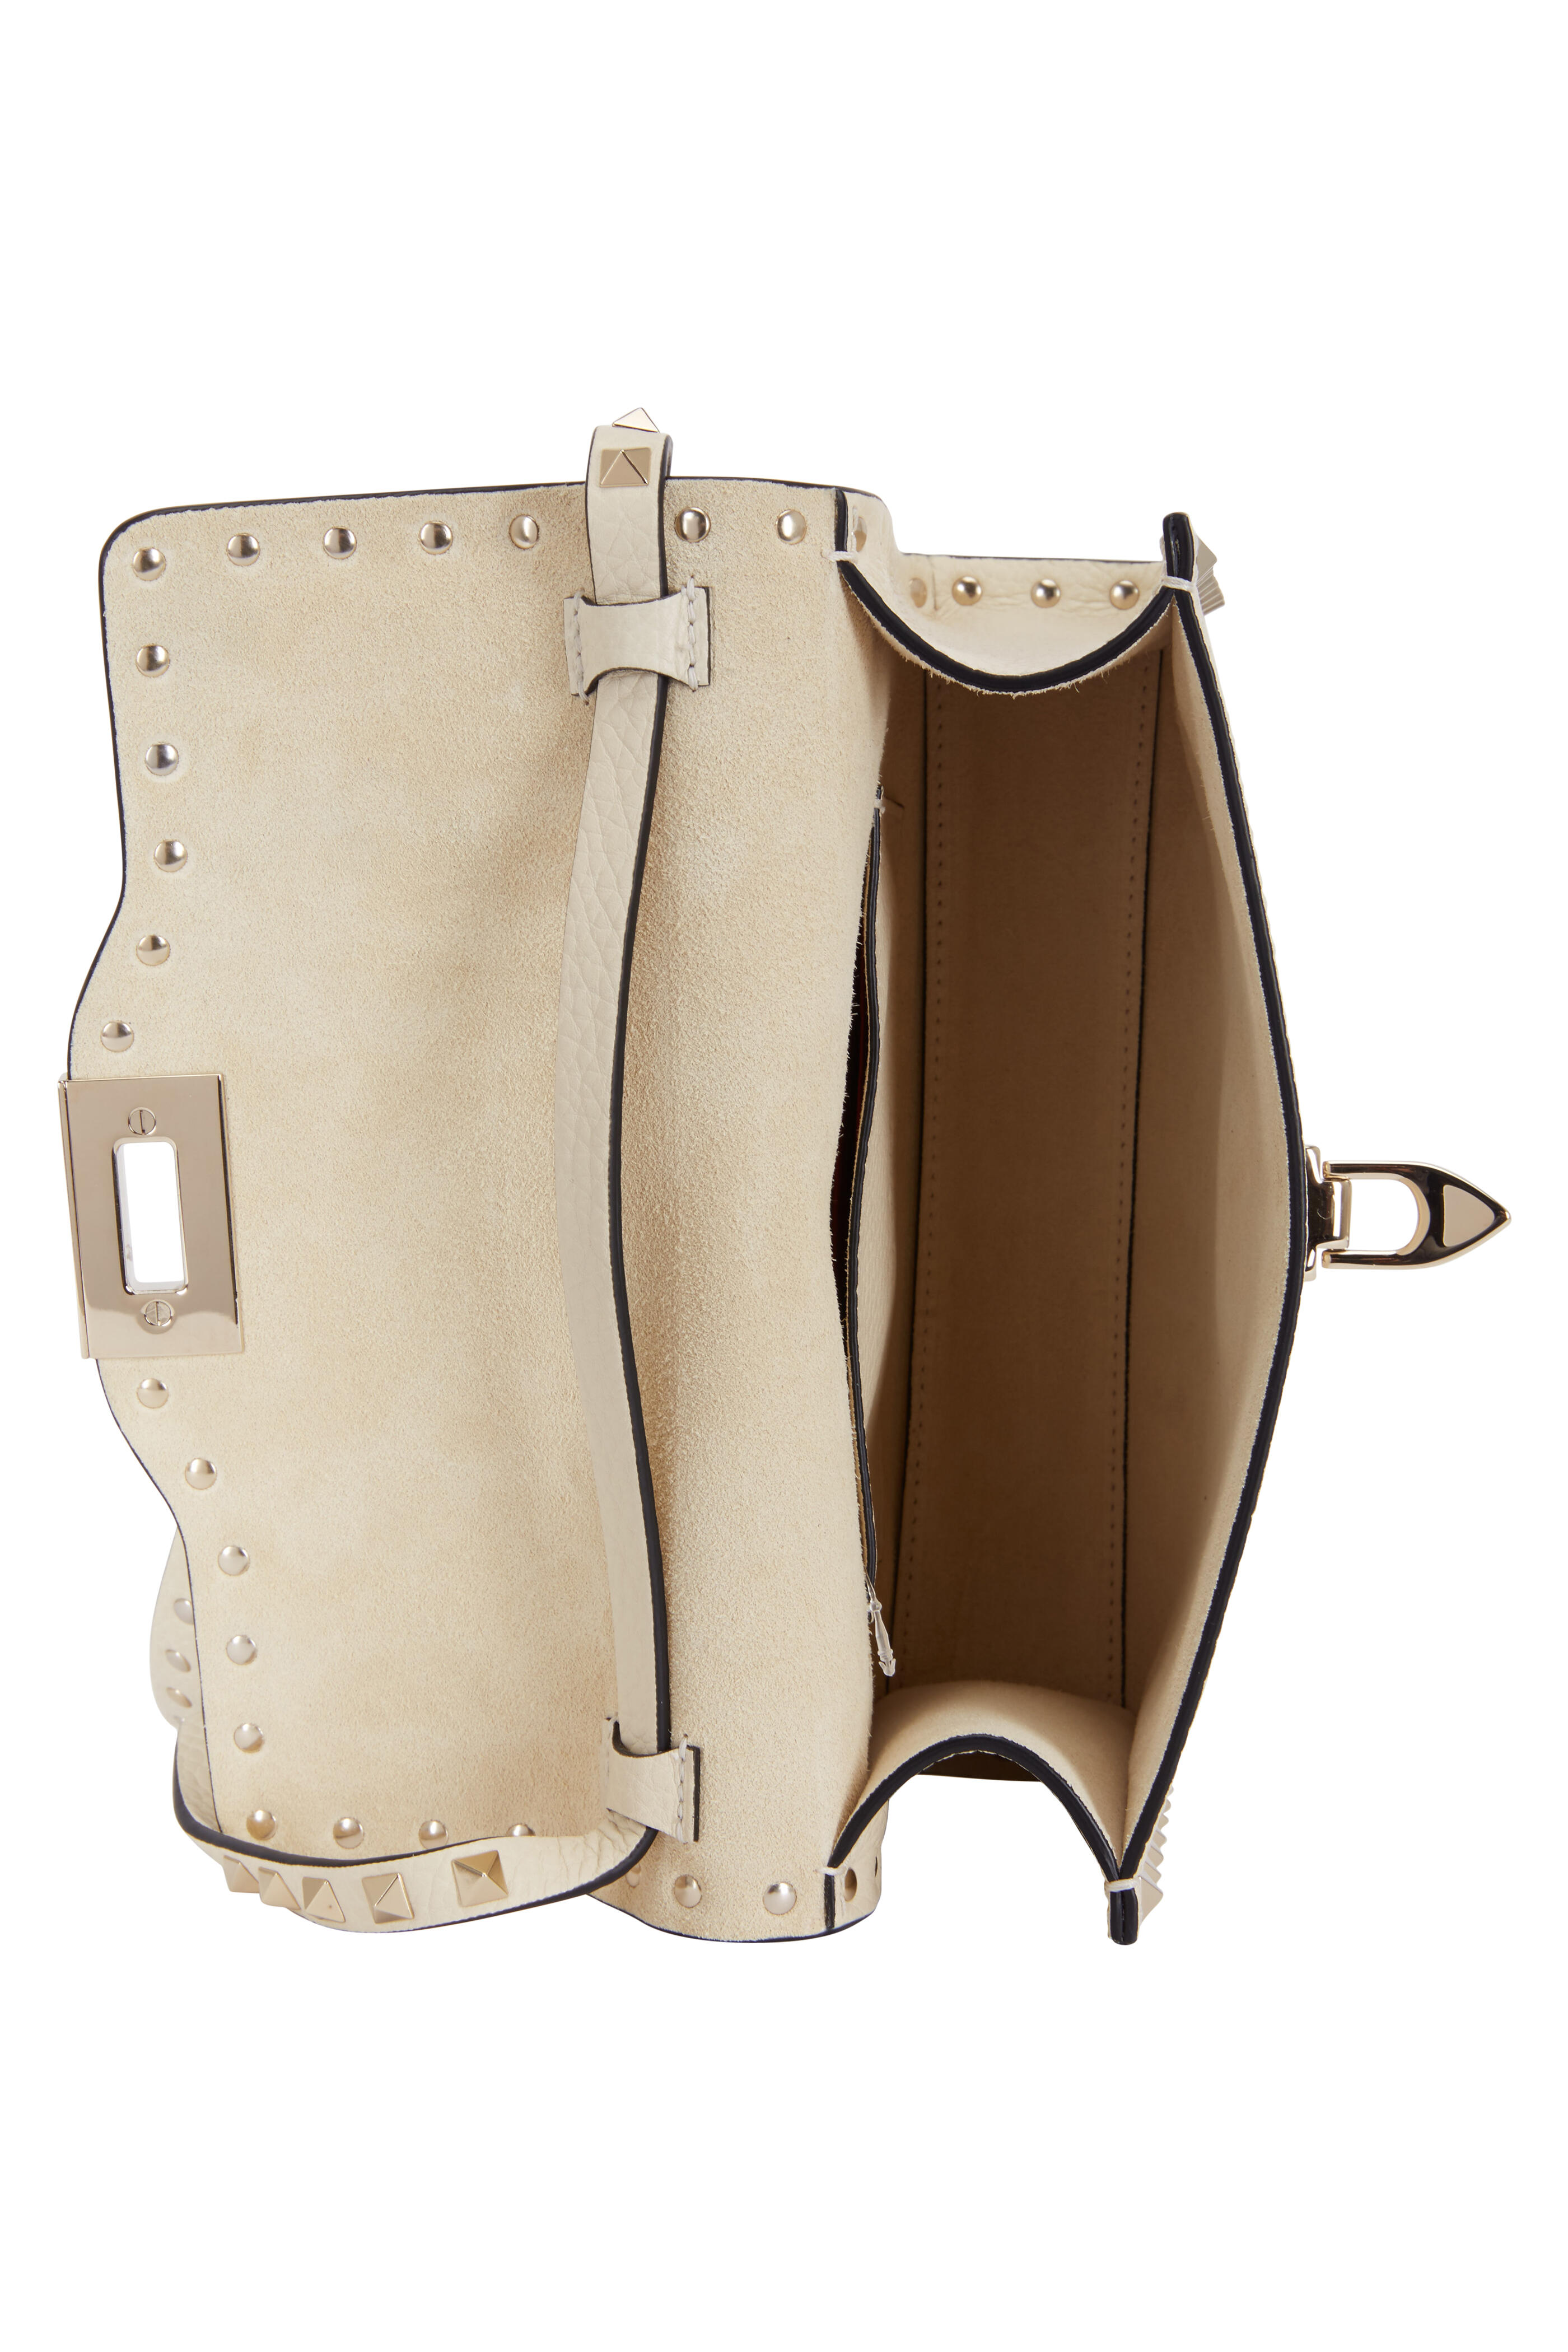 Valentino Garavani Rockstud leather shoulder bag